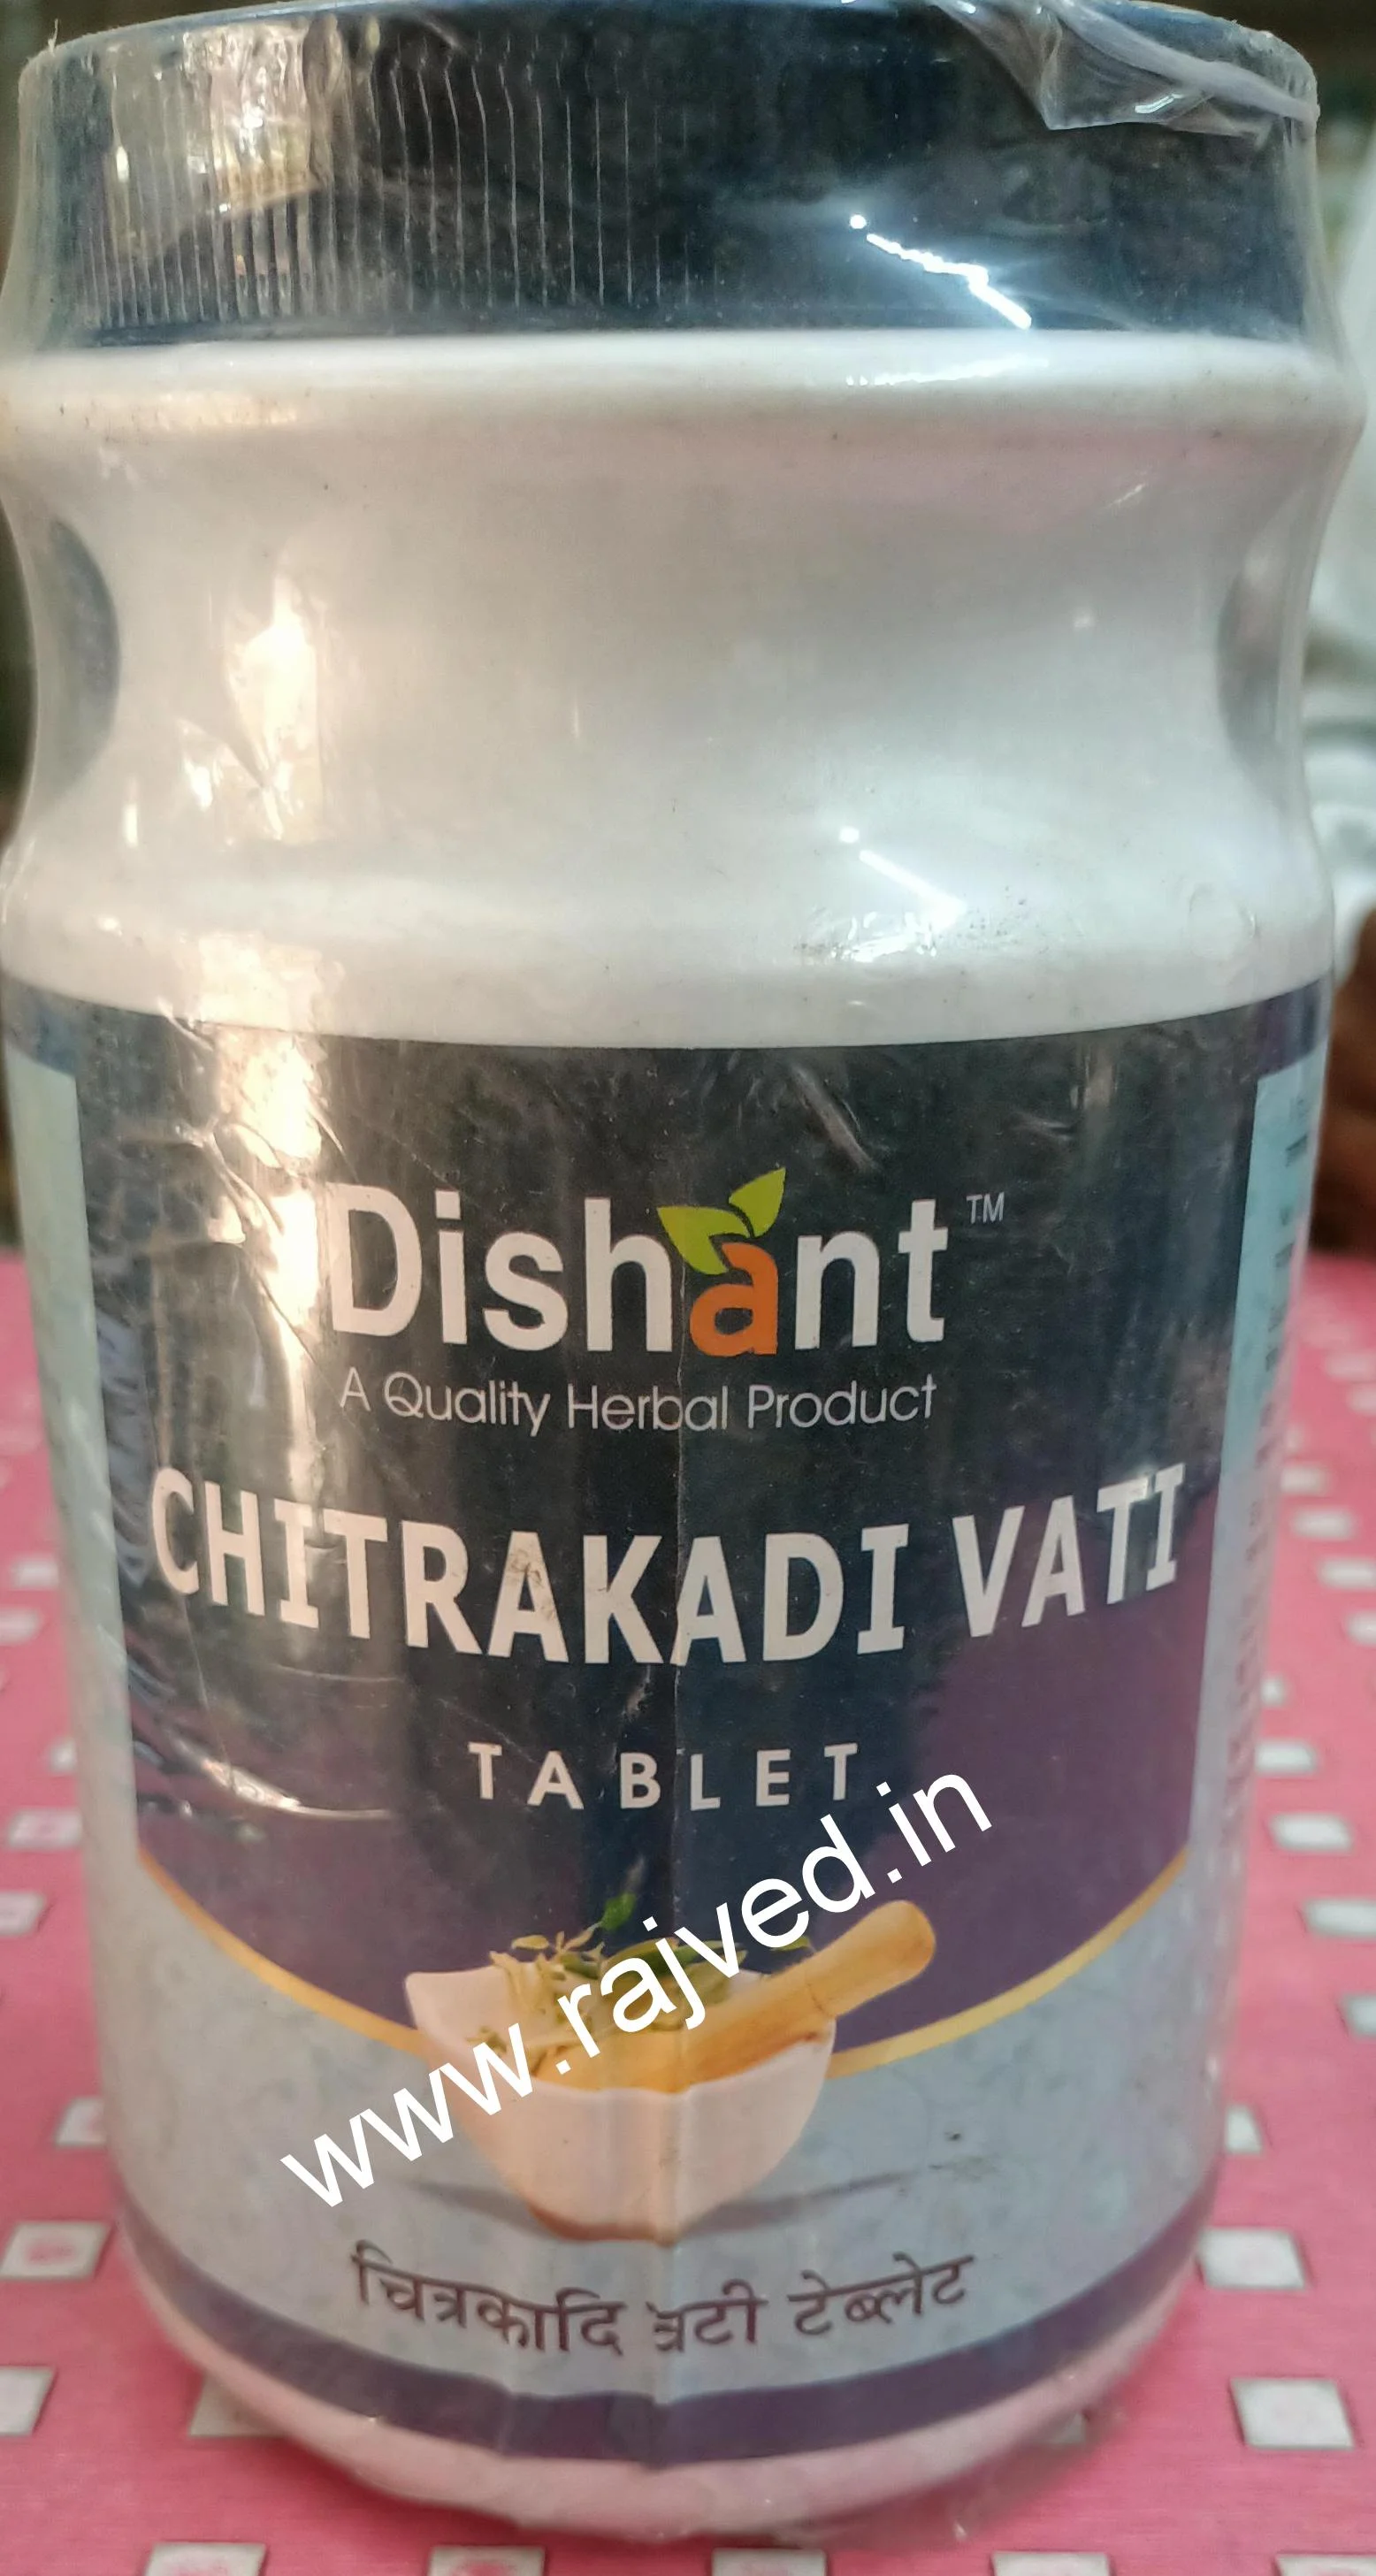 chitrakadi vati tablets 250 gm upto 20% off dishant ayurvedic suppliers